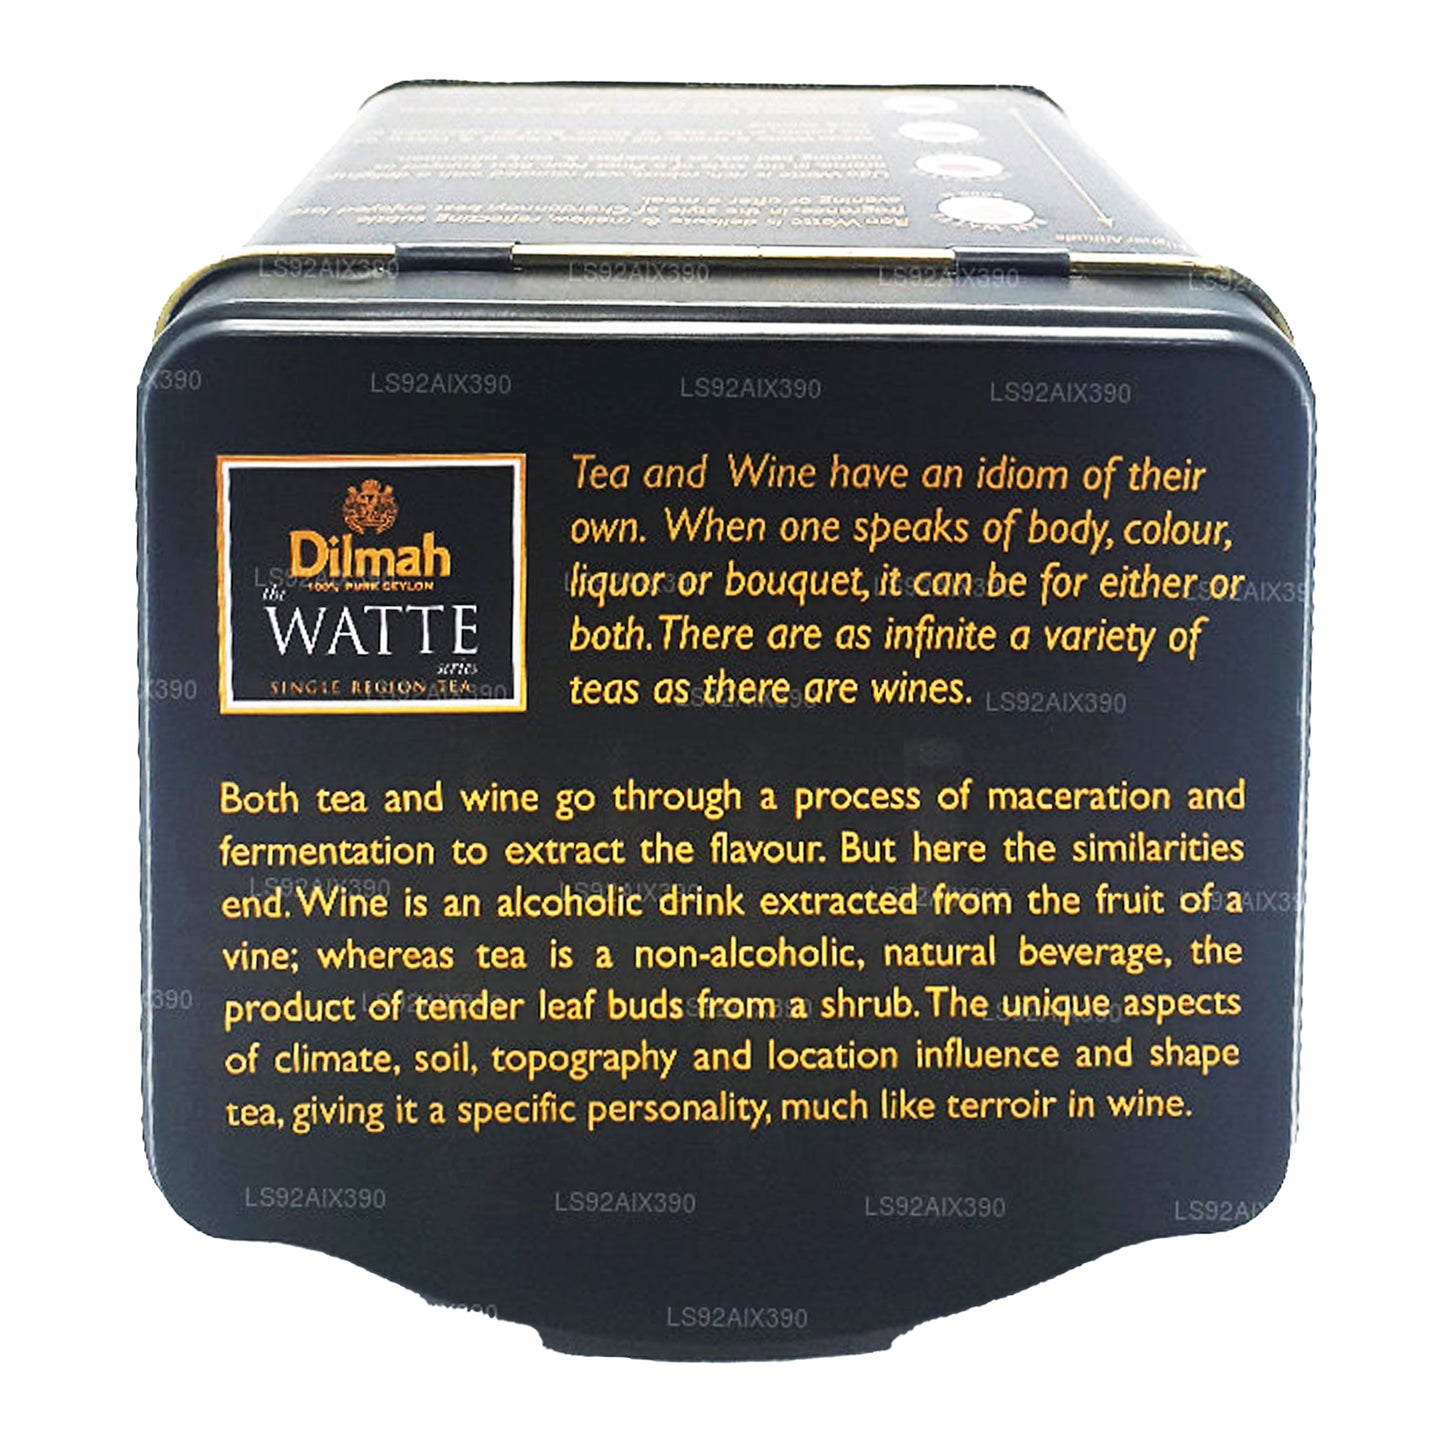 Dilmah Uda Watte Loseblatt-Tee (125 g)